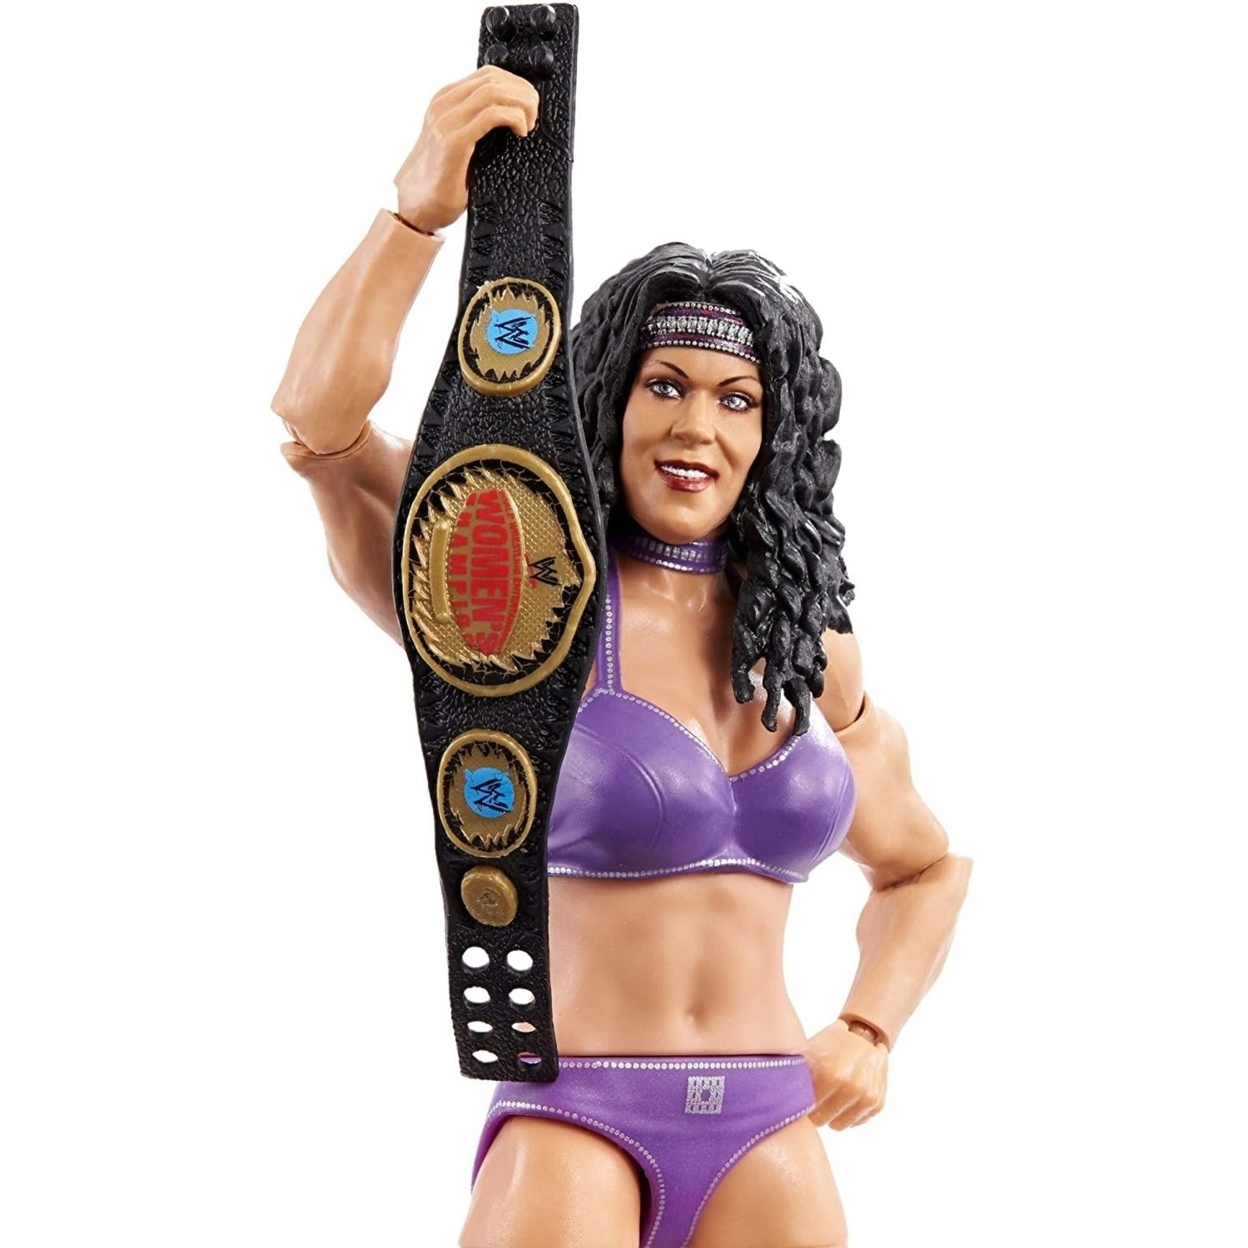 WWE Wrestlemania Elite Collection Chyna Wrestling Superstar 9th Wonder Mattel